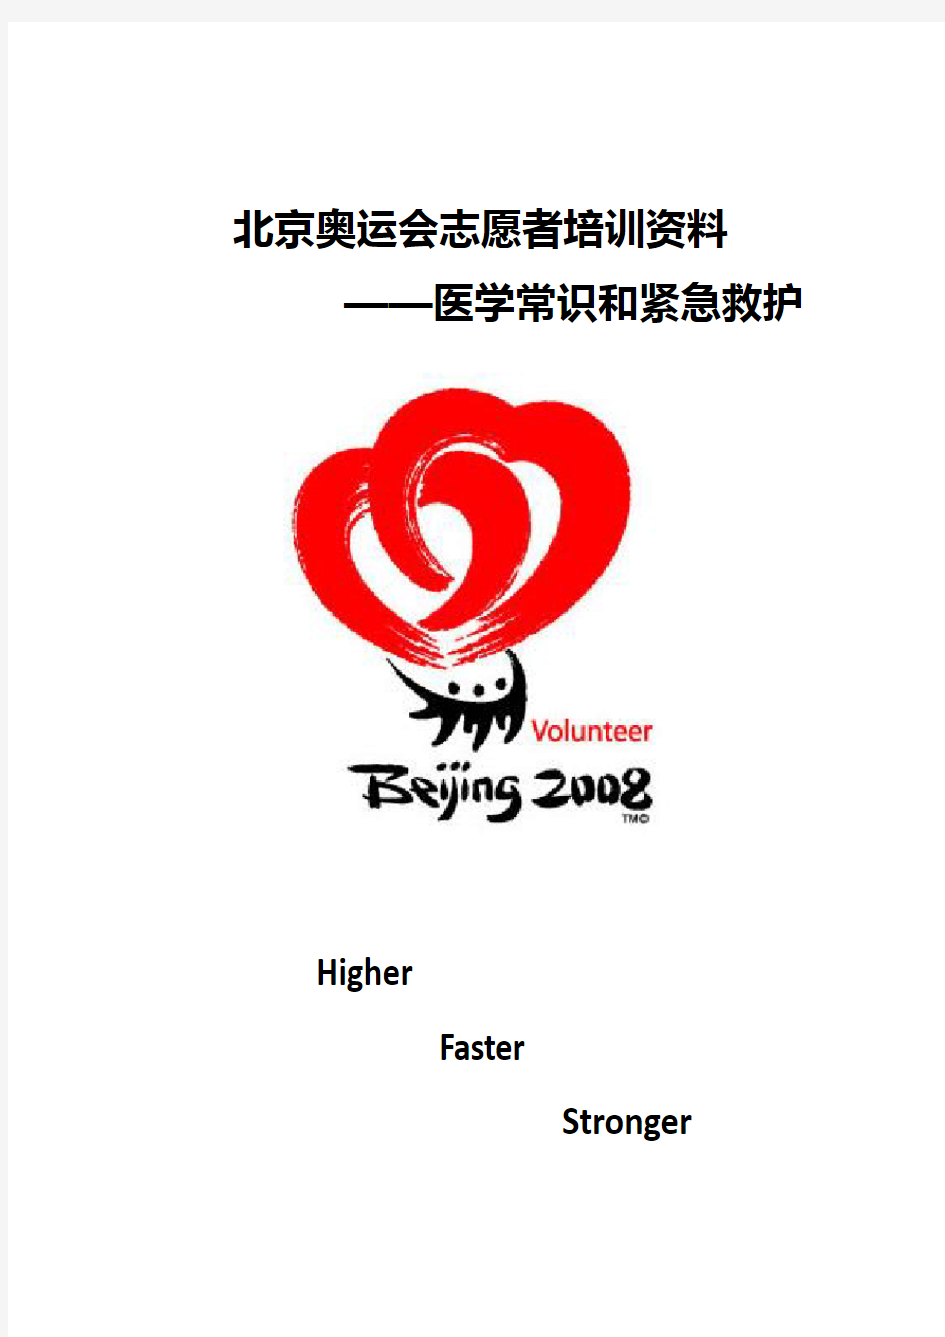 《北京奥运志愿者培训资料》医学常识和紧急救护